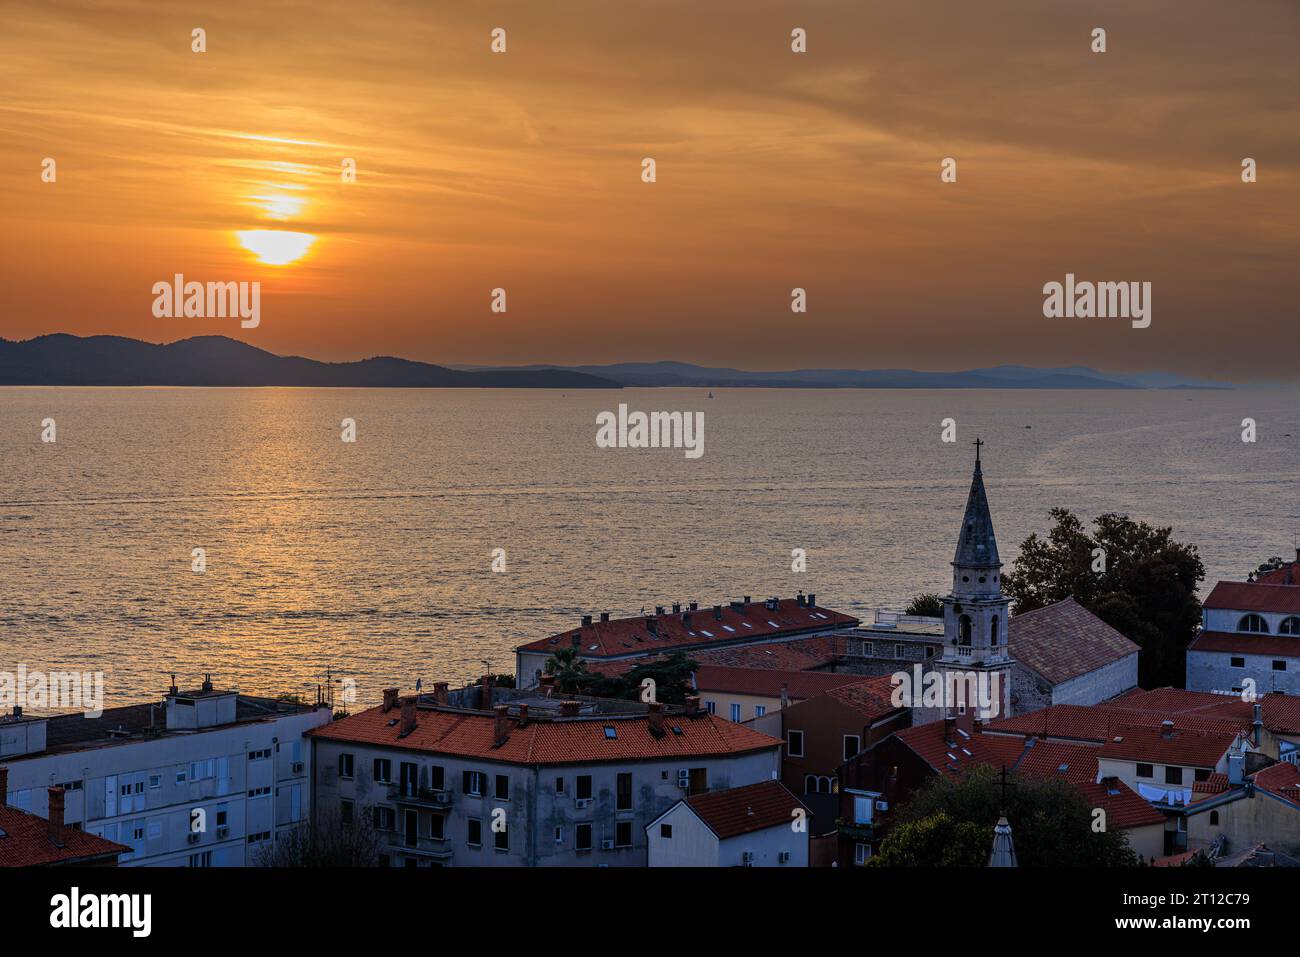 vista aerea del sole che tramonta dietro montagne lontane in un cielo arancione riflesso in un mare calmo dal campanile di sant'anastasia a zara in croazia Foto Stock